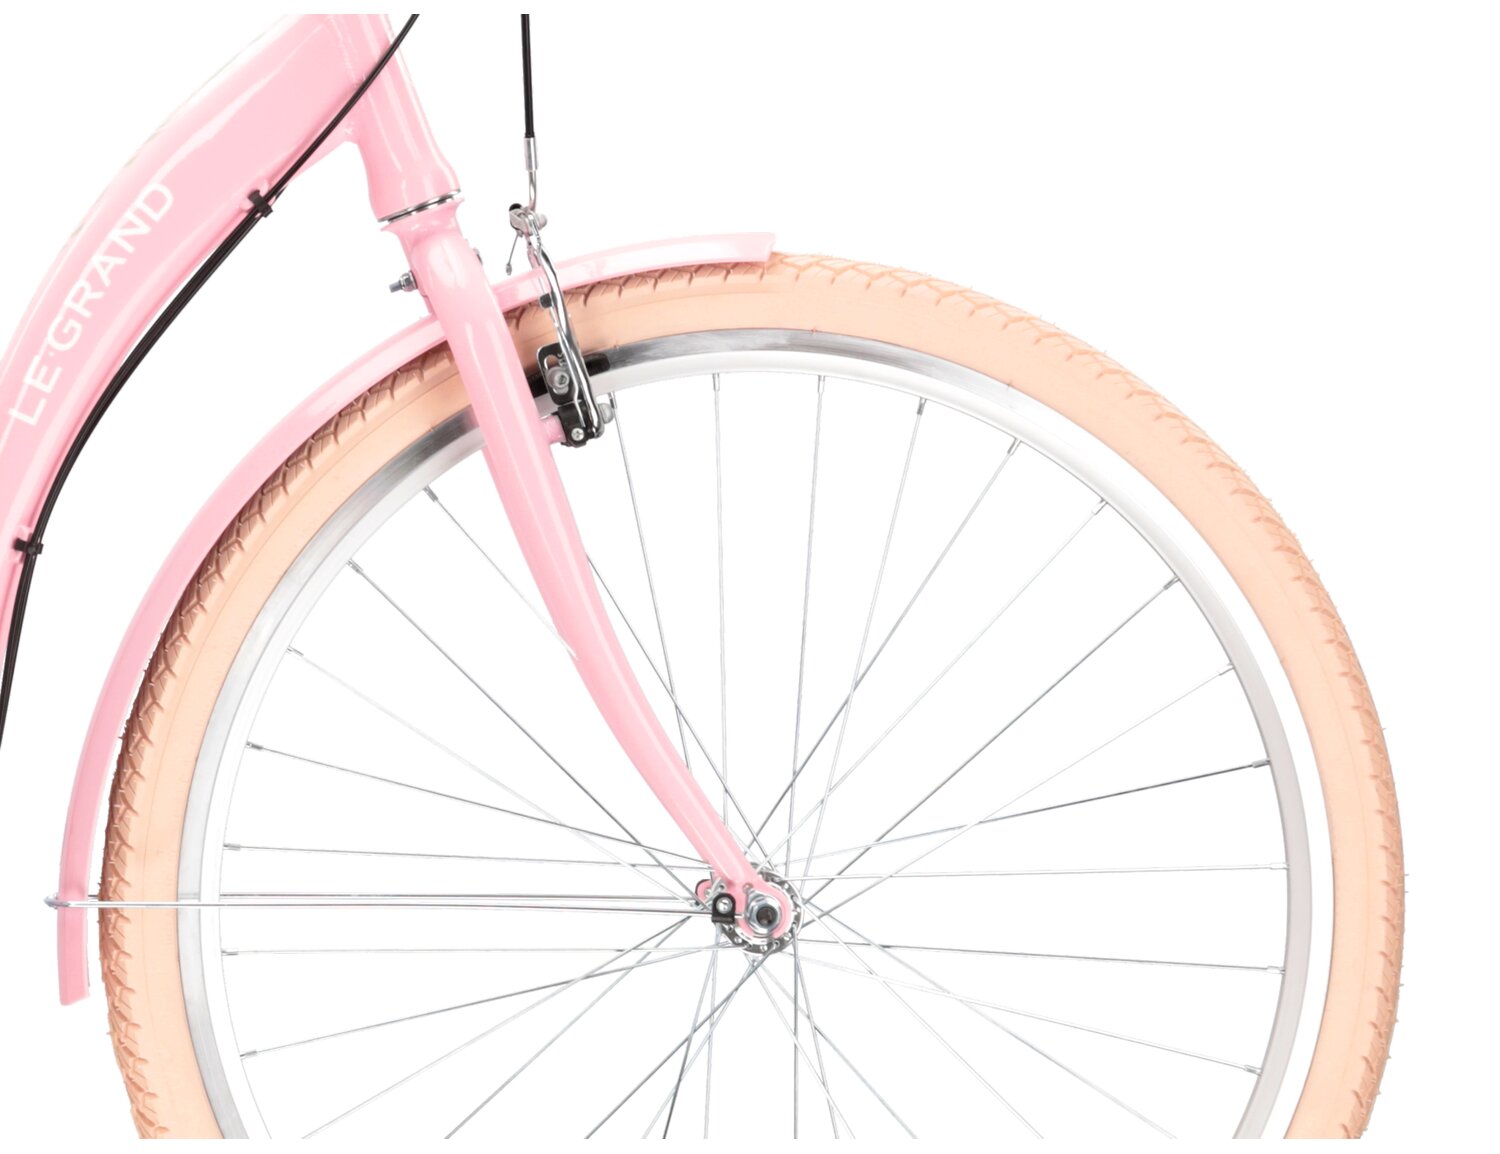 Aluminowa rama, sztywny stalowy widelec oraz opony o szerokości 1,75 cala w rowerze miejskim Le Grand Lille 2.0 